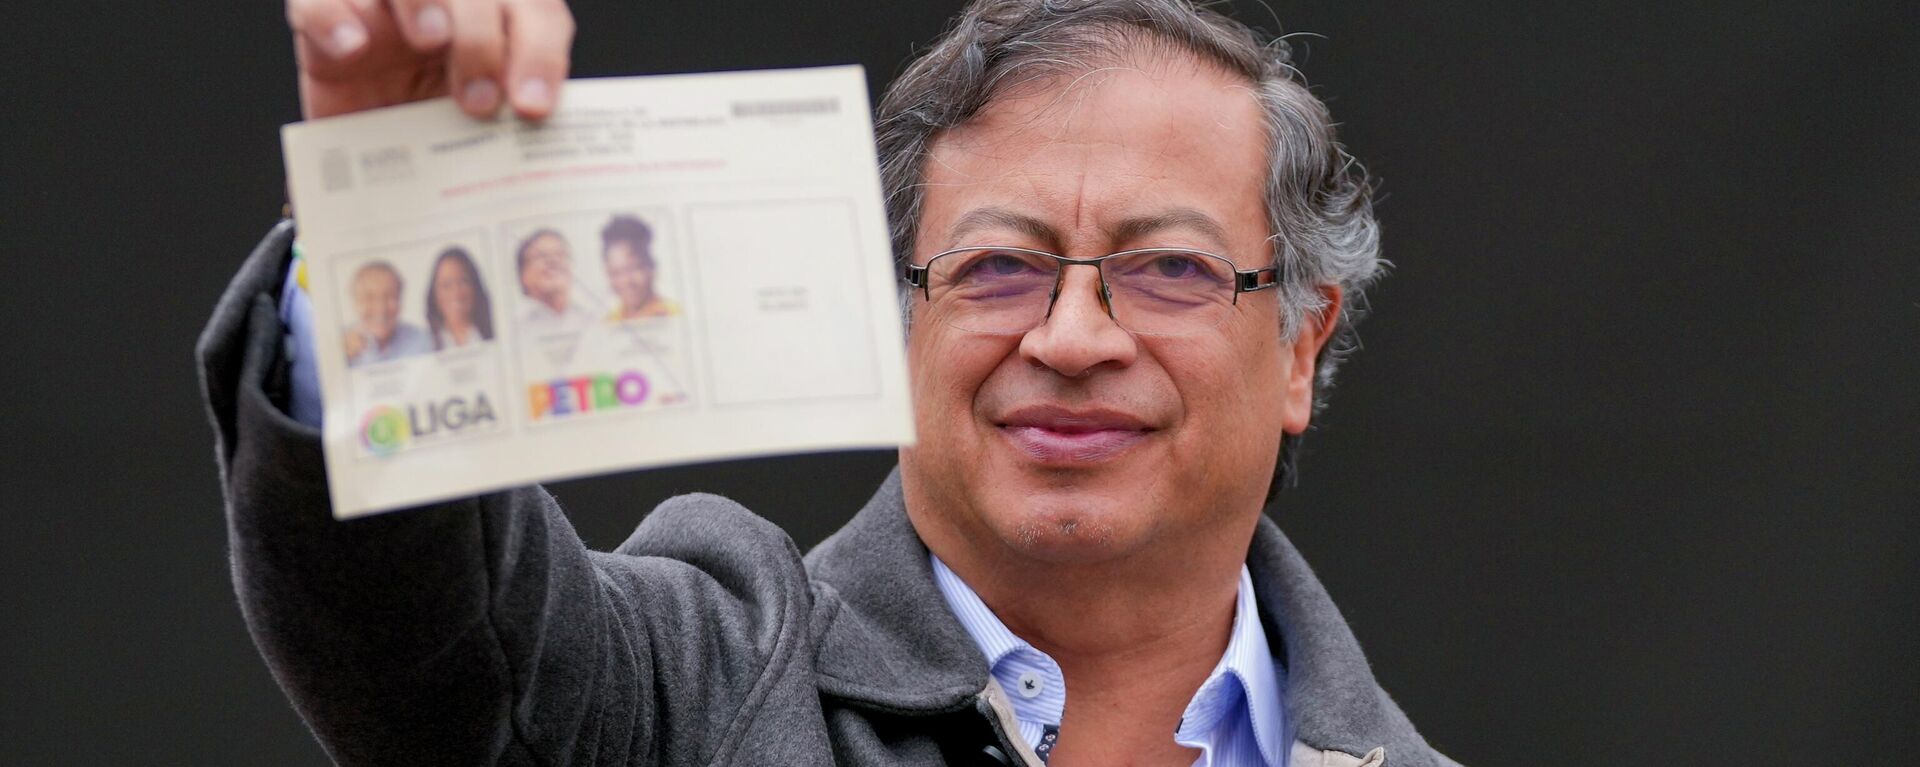 Gustavo Petro, então candidato à presidência da Colômbia, vota durante as eleições, em 19 de junho de 2022 - Sputnik Brasil, 1920, 11.08.2022